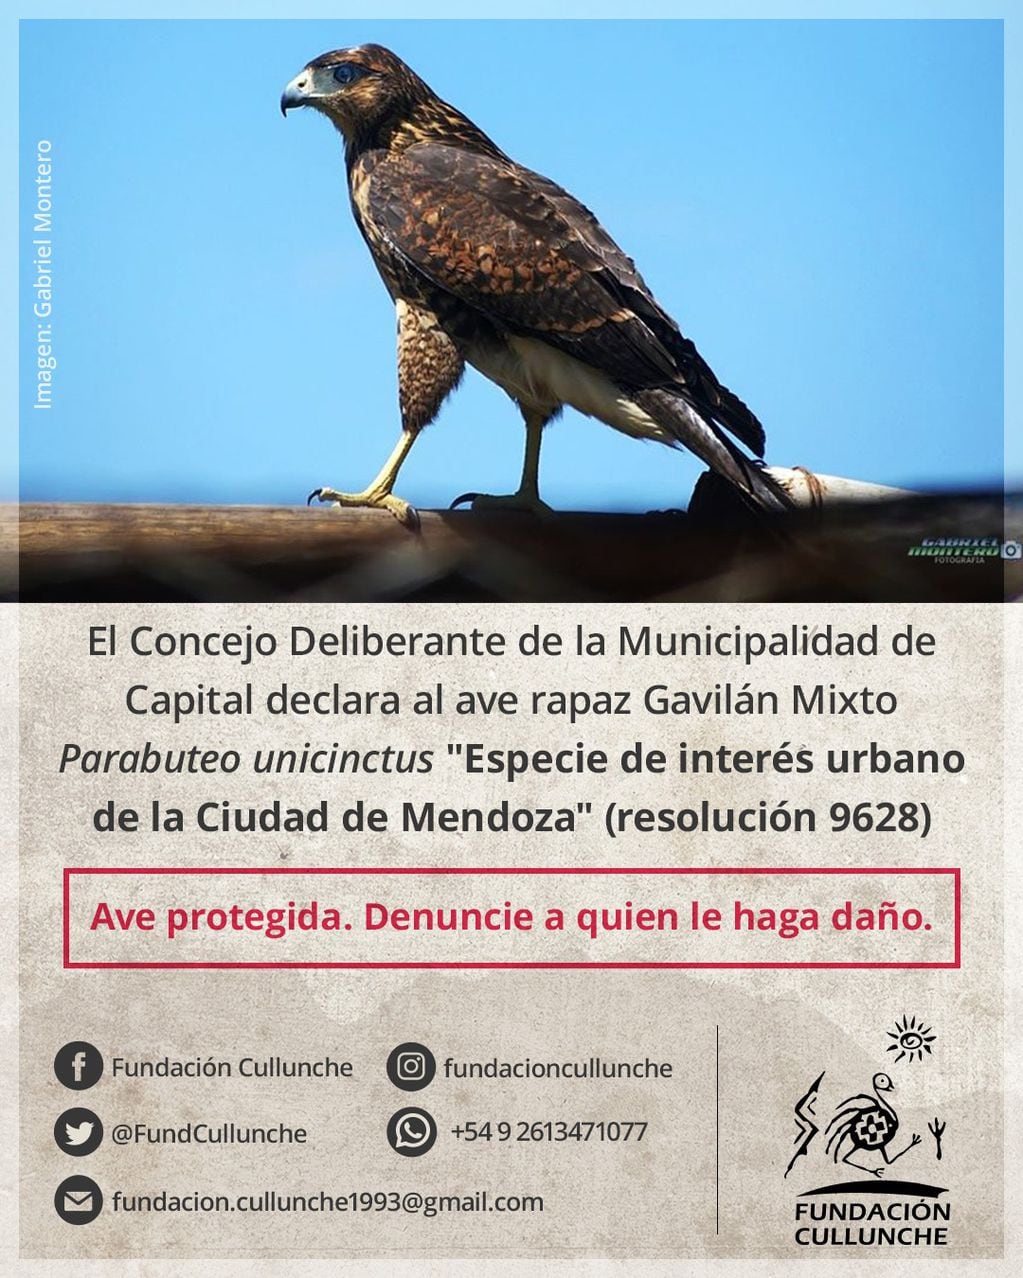 Las majestuosas aves que se ven más con más frecuencia en el centro y ayudan a controlar plagas: piden no atacarlas. Foto: Fundación Cullunche.